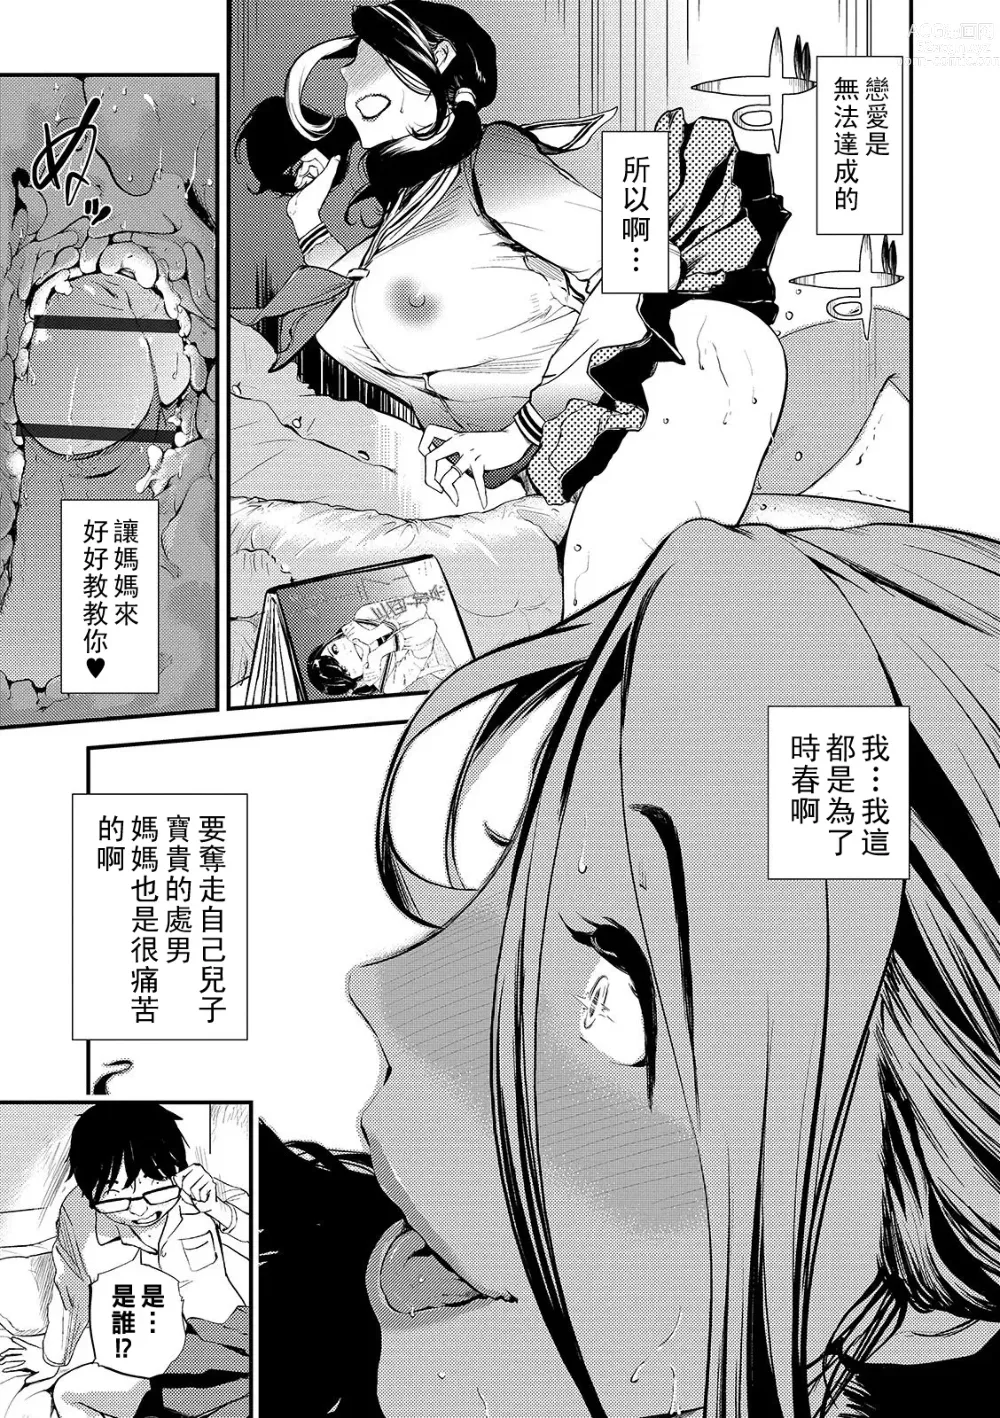 Page 9 of manga Mama no Kitsch Return